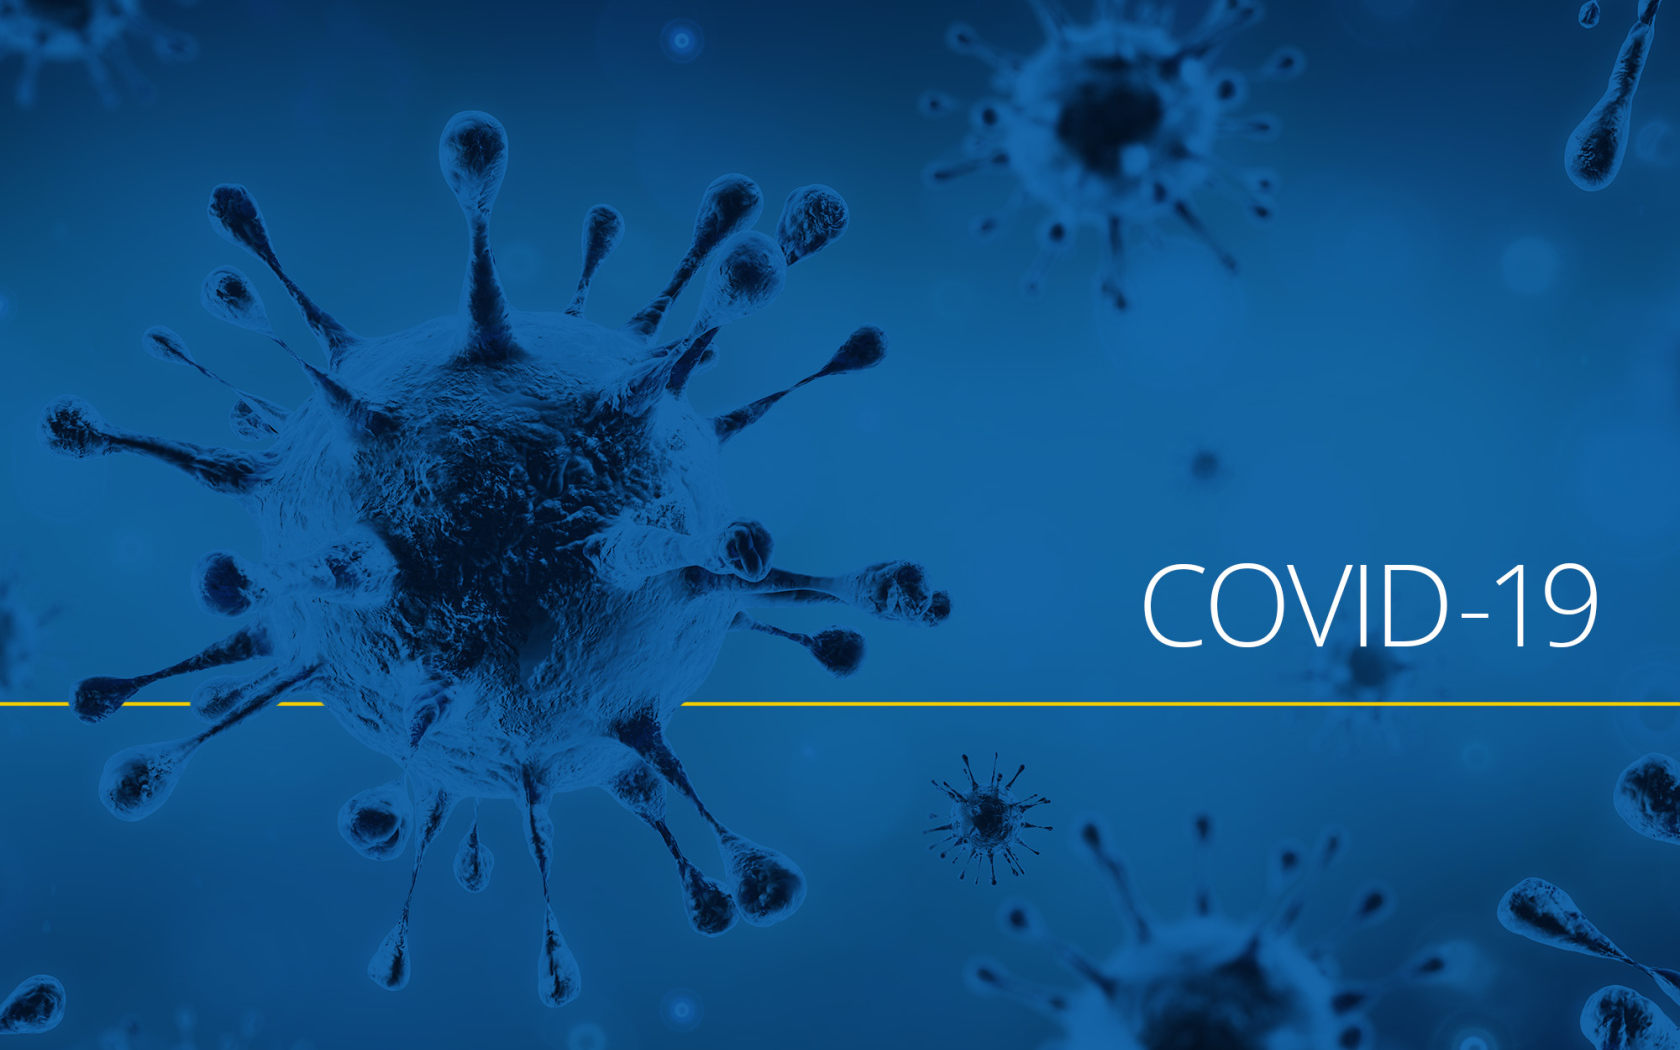 Пандемия коронавирус covid-19, 2020 год 